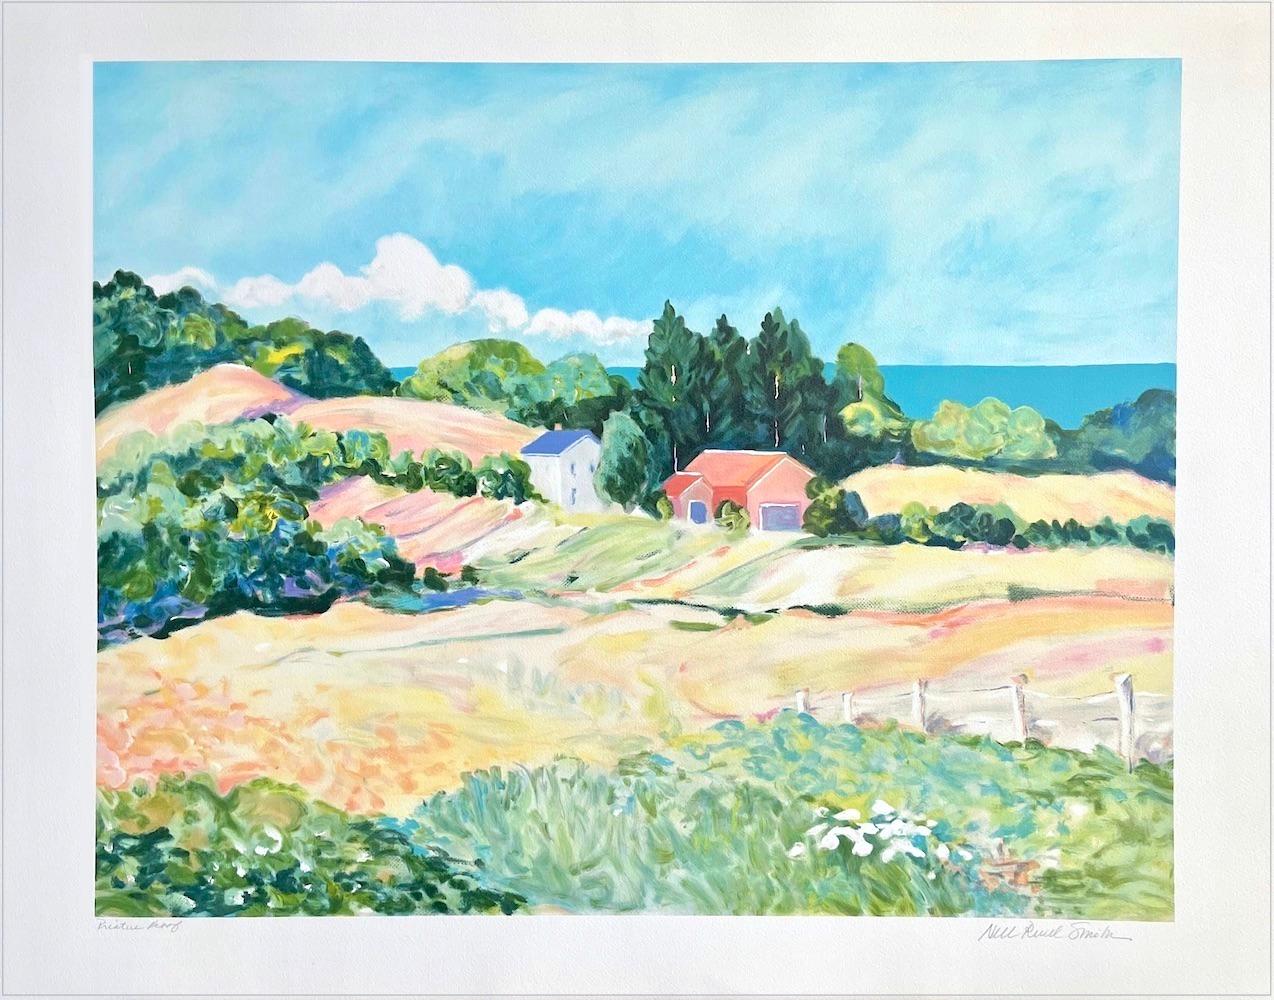 Pastell-Landschaft: Impressionistisches Bauernhaus, signierte Lithographie, moderner Monet-Stil 